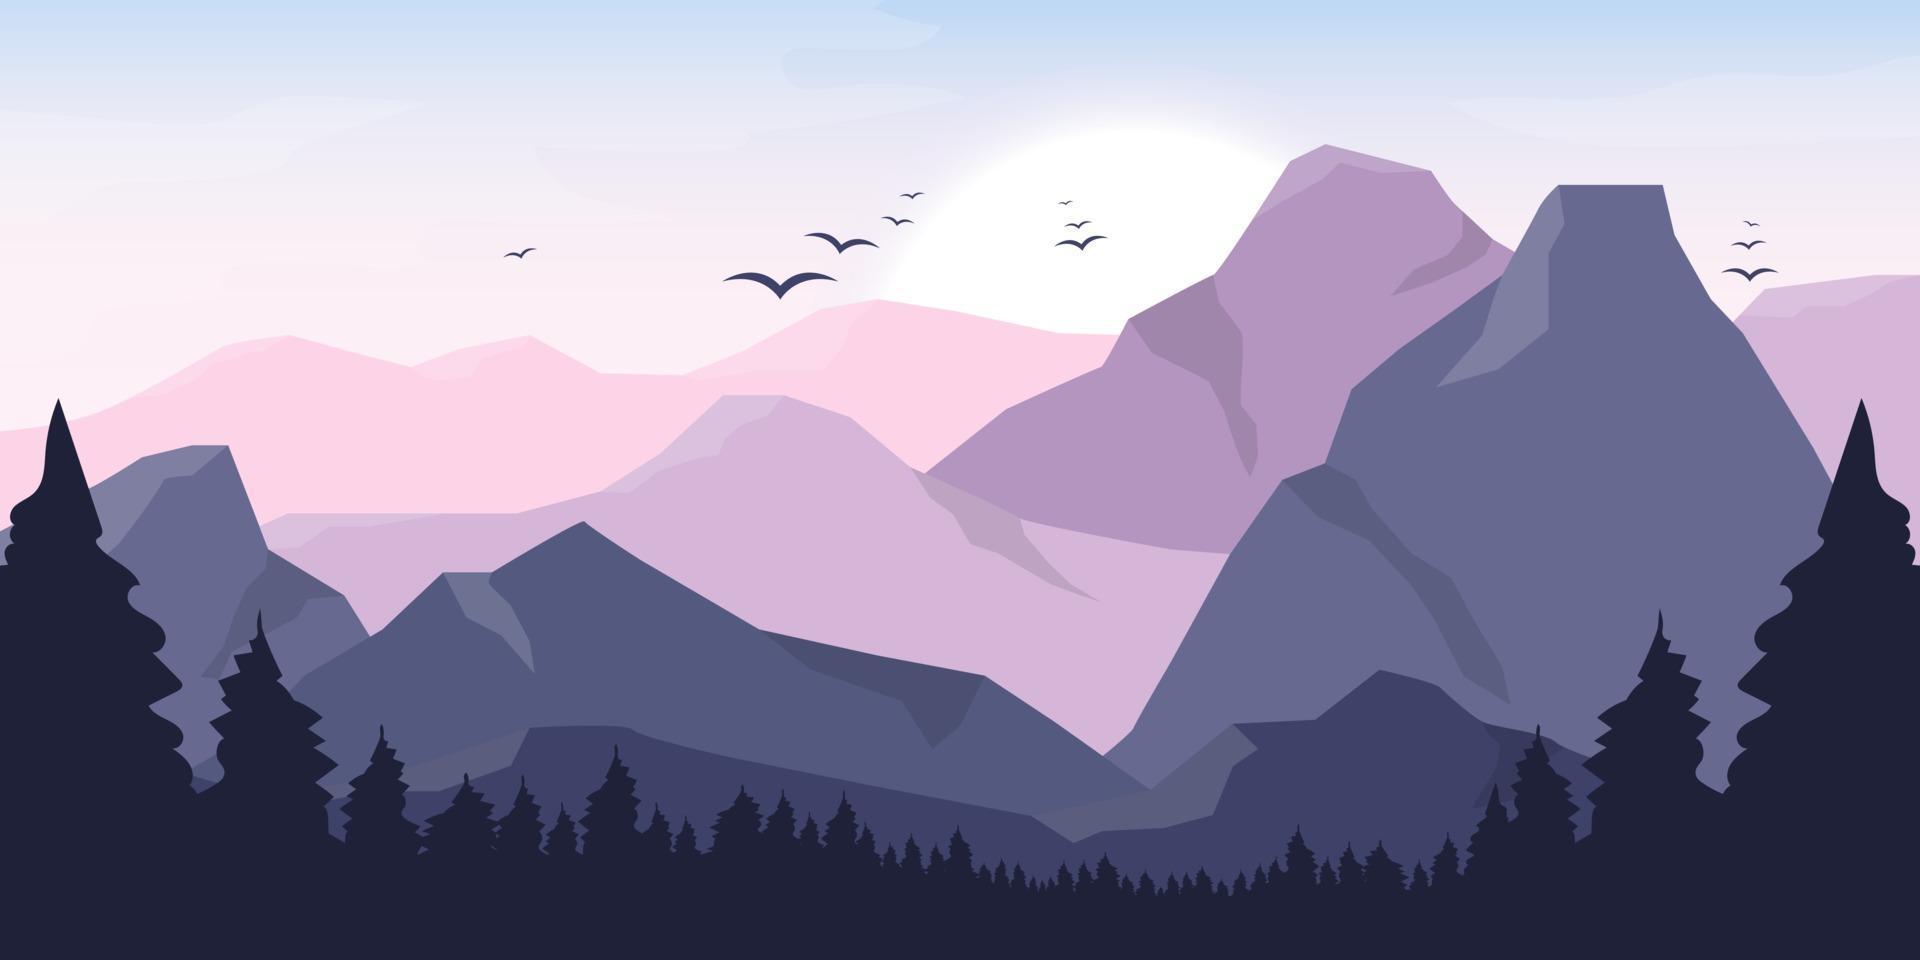 illustrazione di disegno vettoriale di sfondo bellissimo paesaggio di montagna